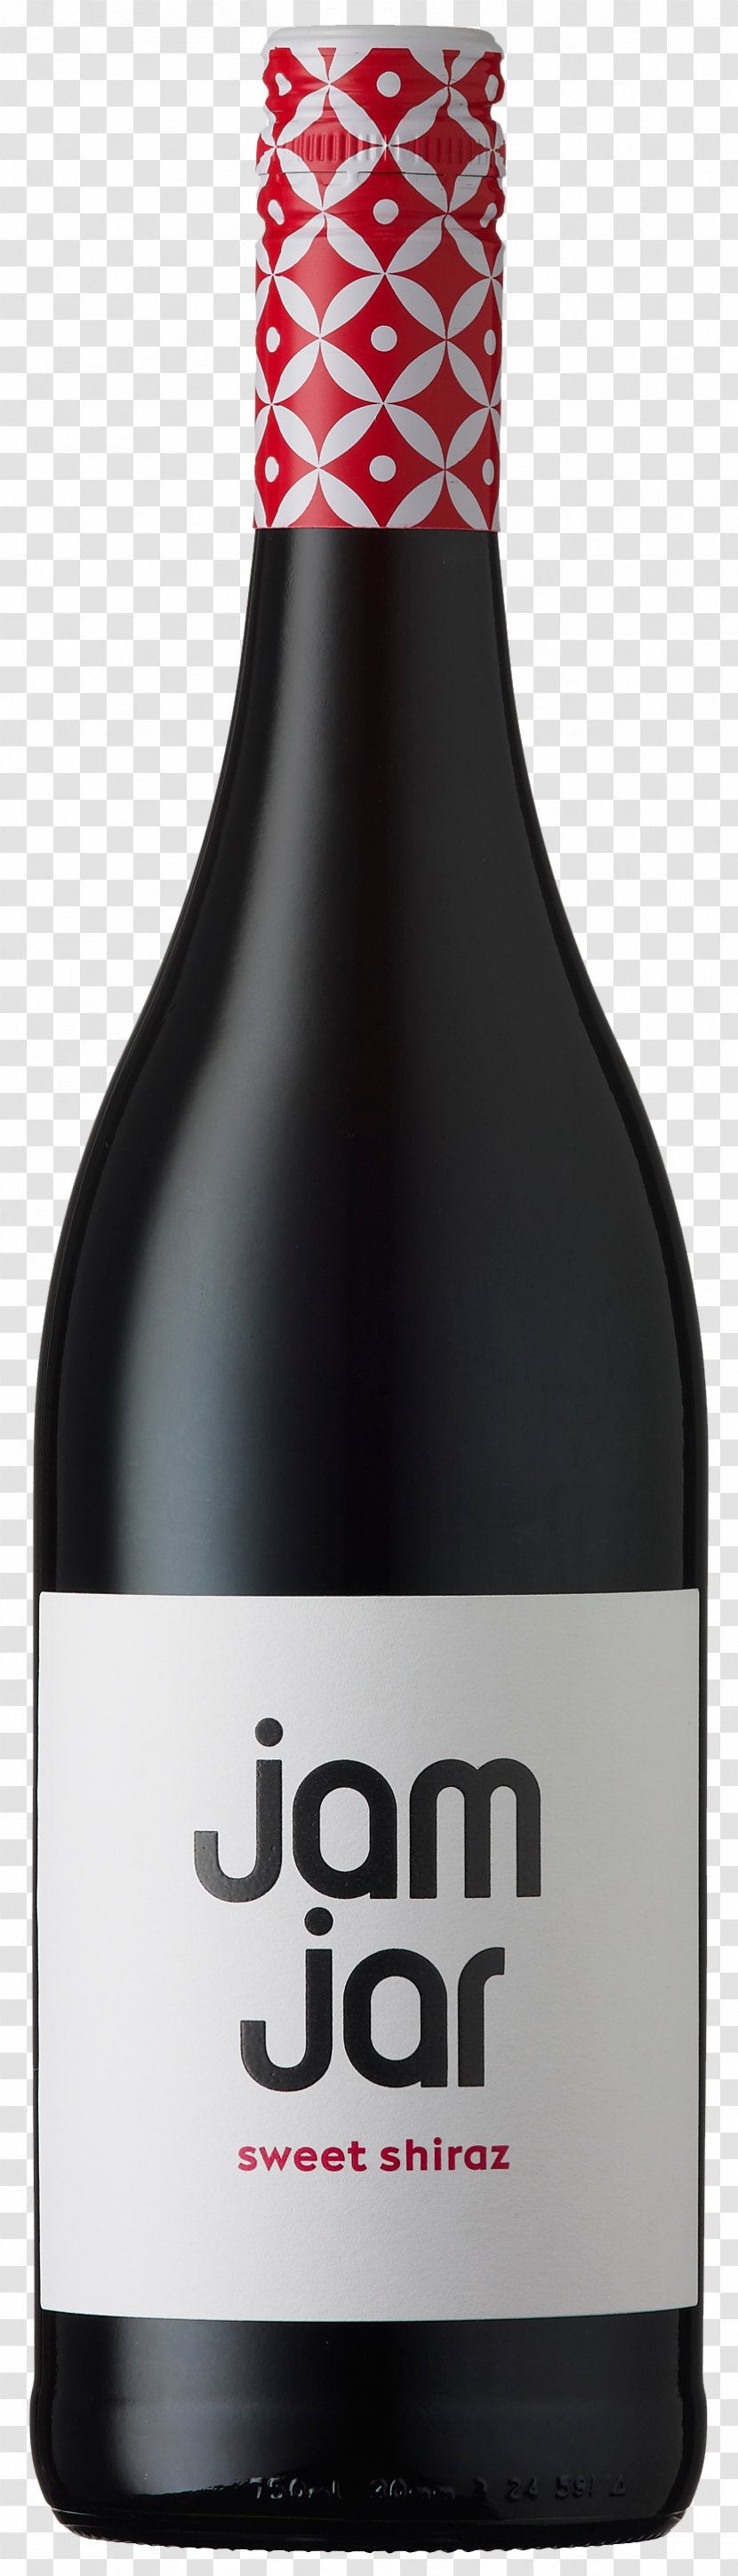 Shiraz White Wine Muscat Cabernet Sauvignon - Glass Bottle Transparent PNG